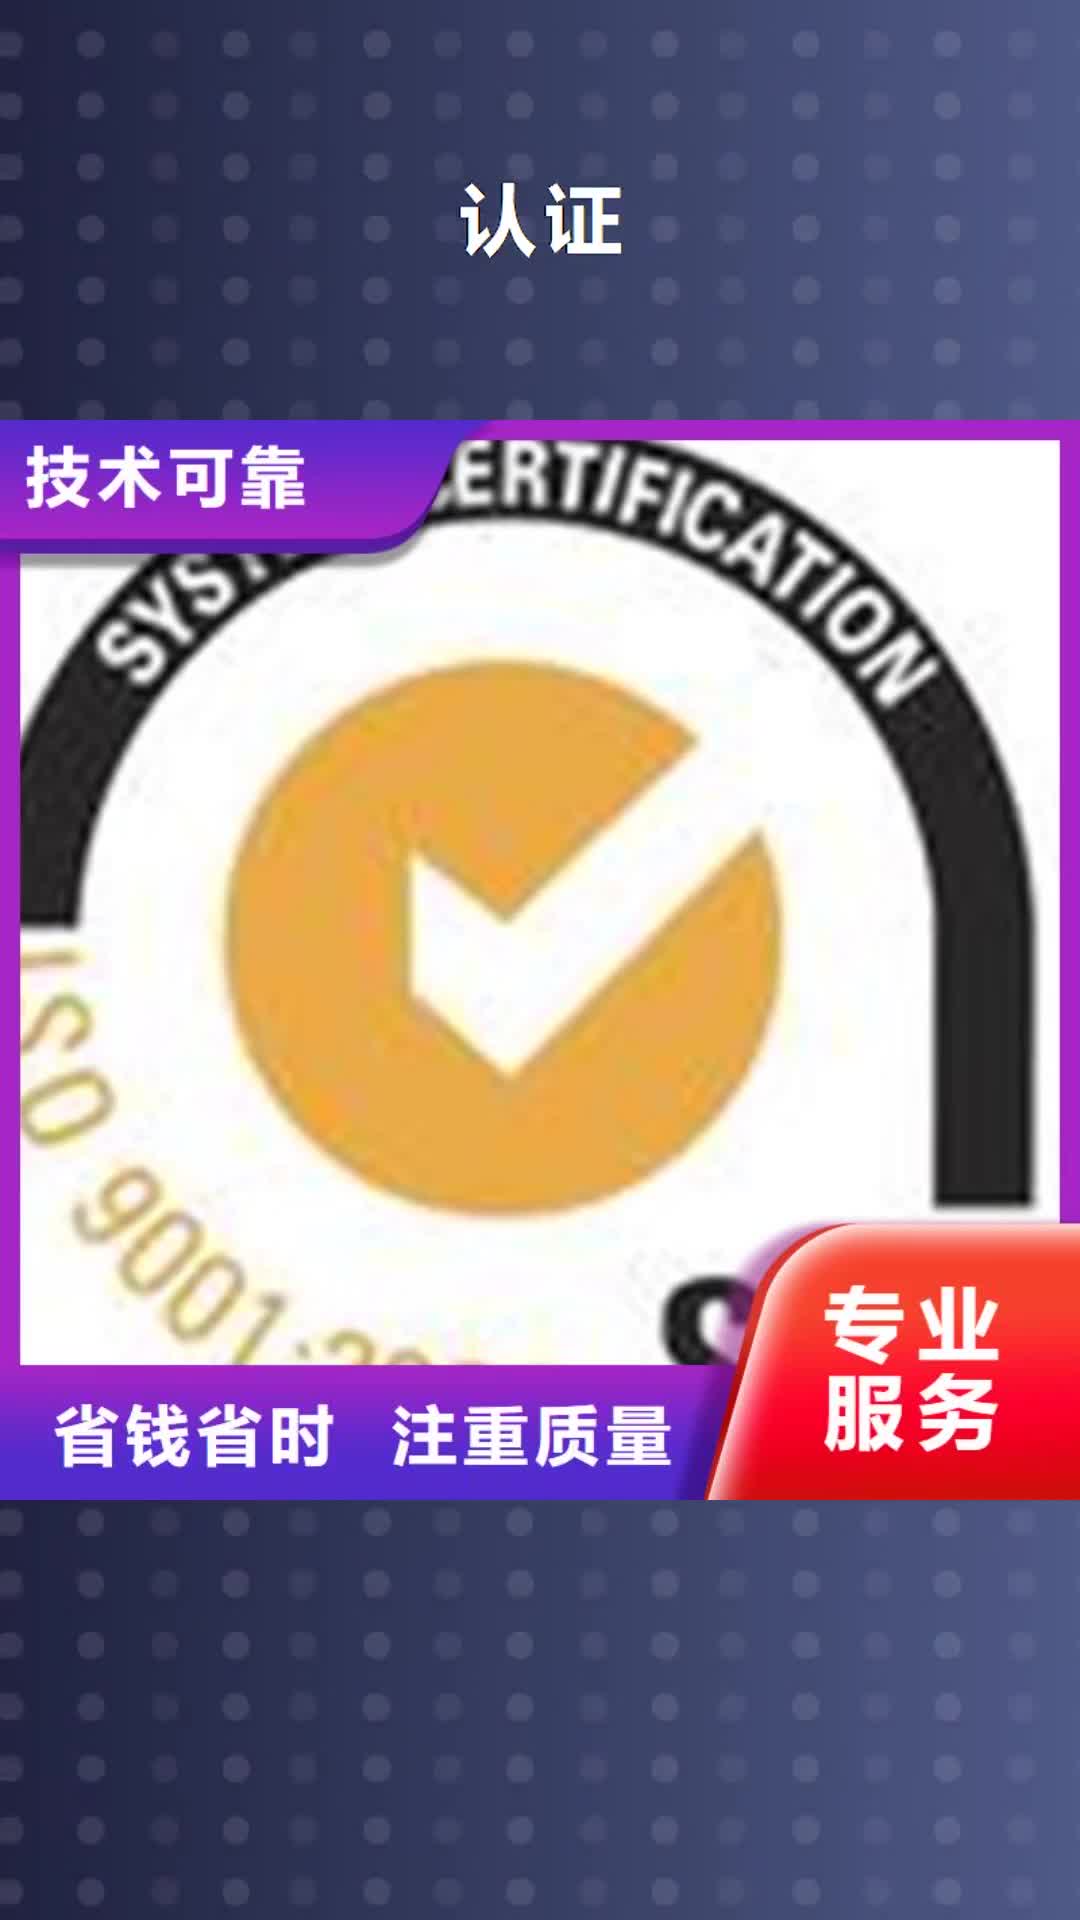 淮北【认证】,ISO9000认证售后保障